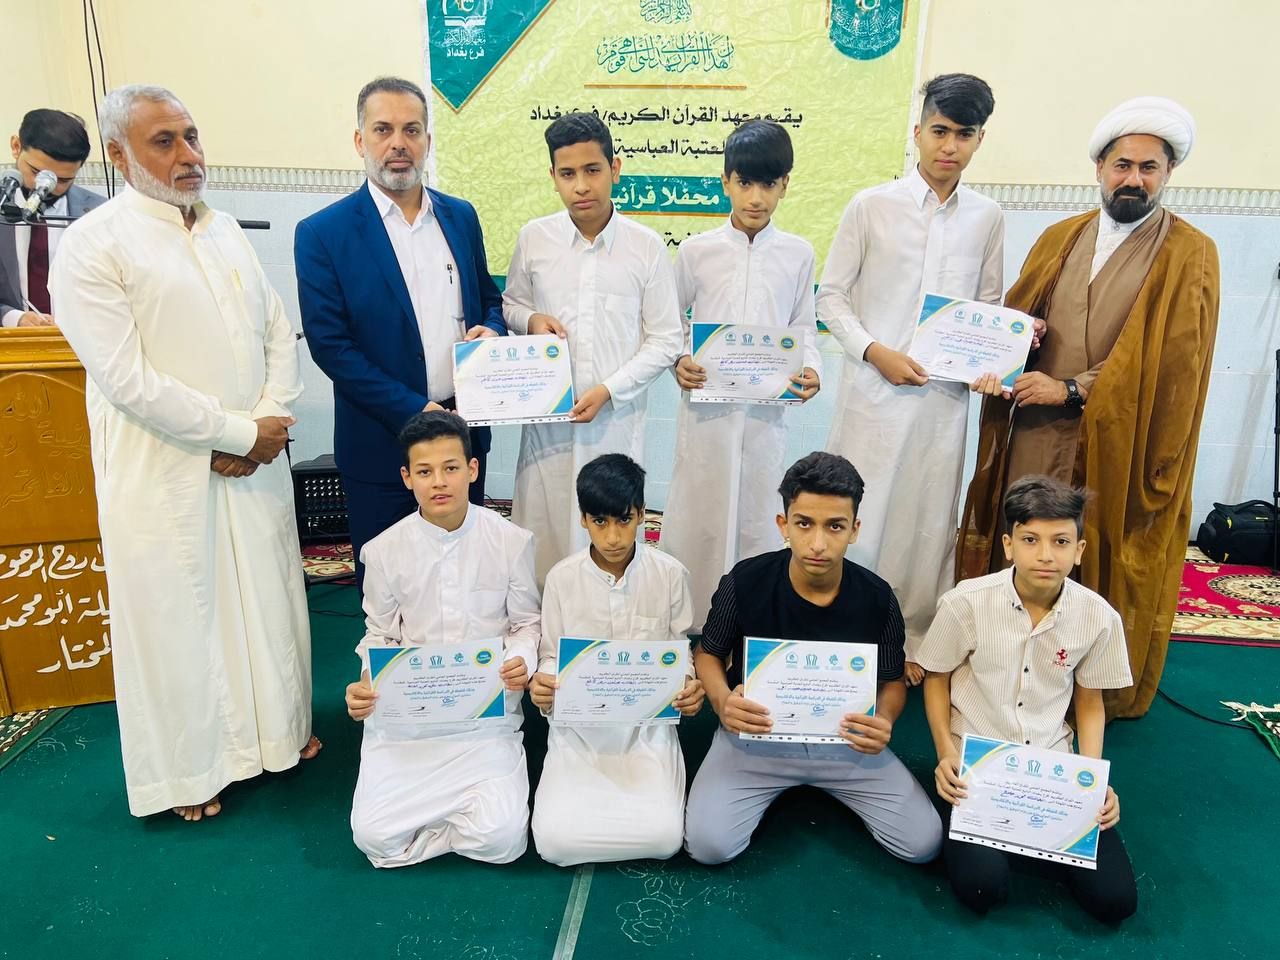 معهد القرآن الكريم يحتفي بتخرّج طلبة الدورات القرآنية في بغداد